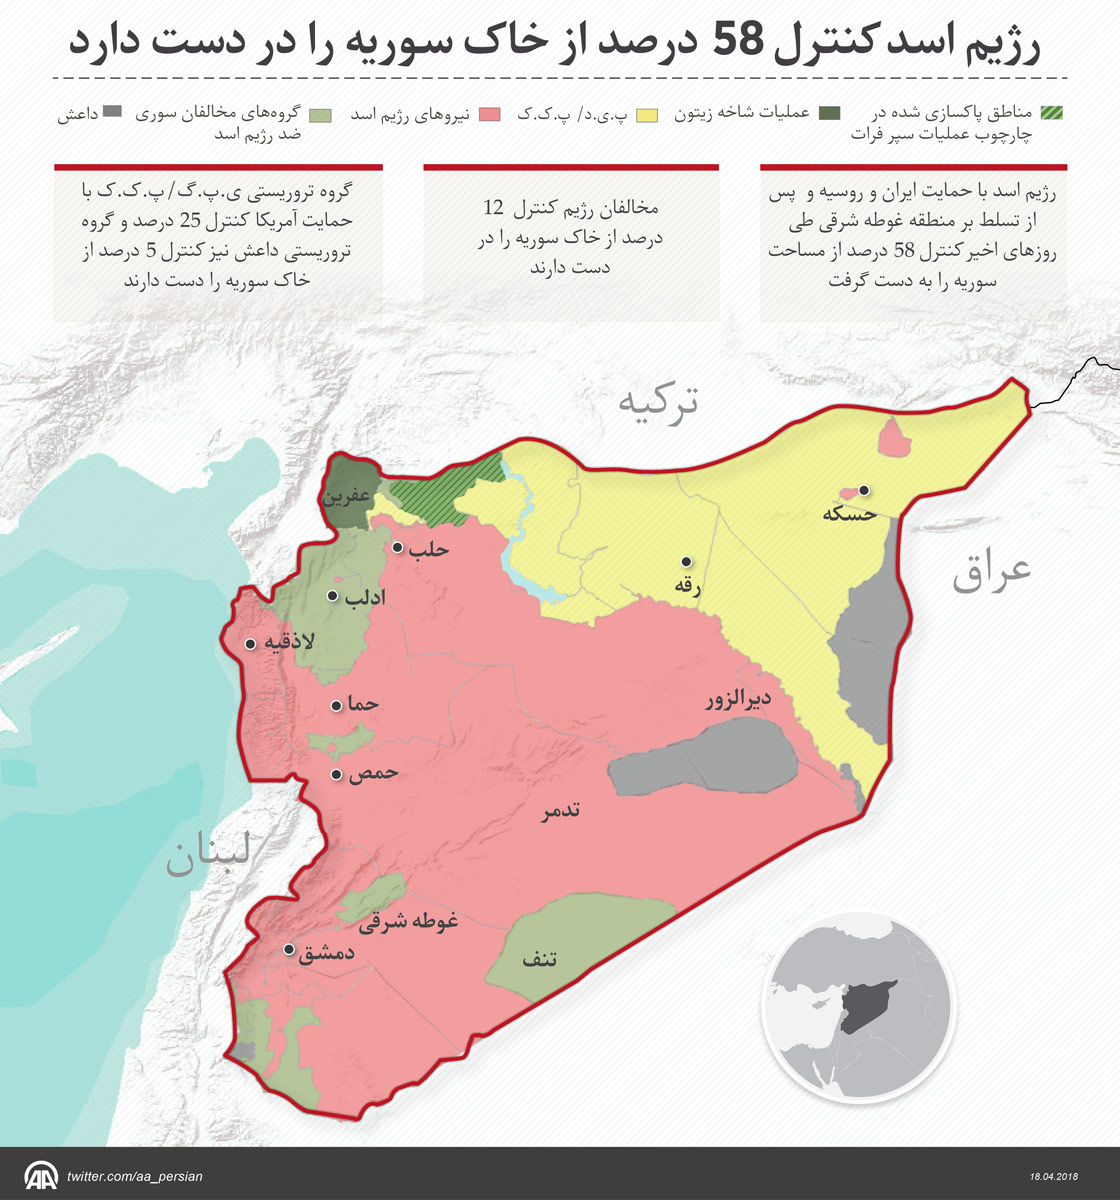 رژیم اسد کنترل 58 درصد از خاک سوریه را در دست دارد